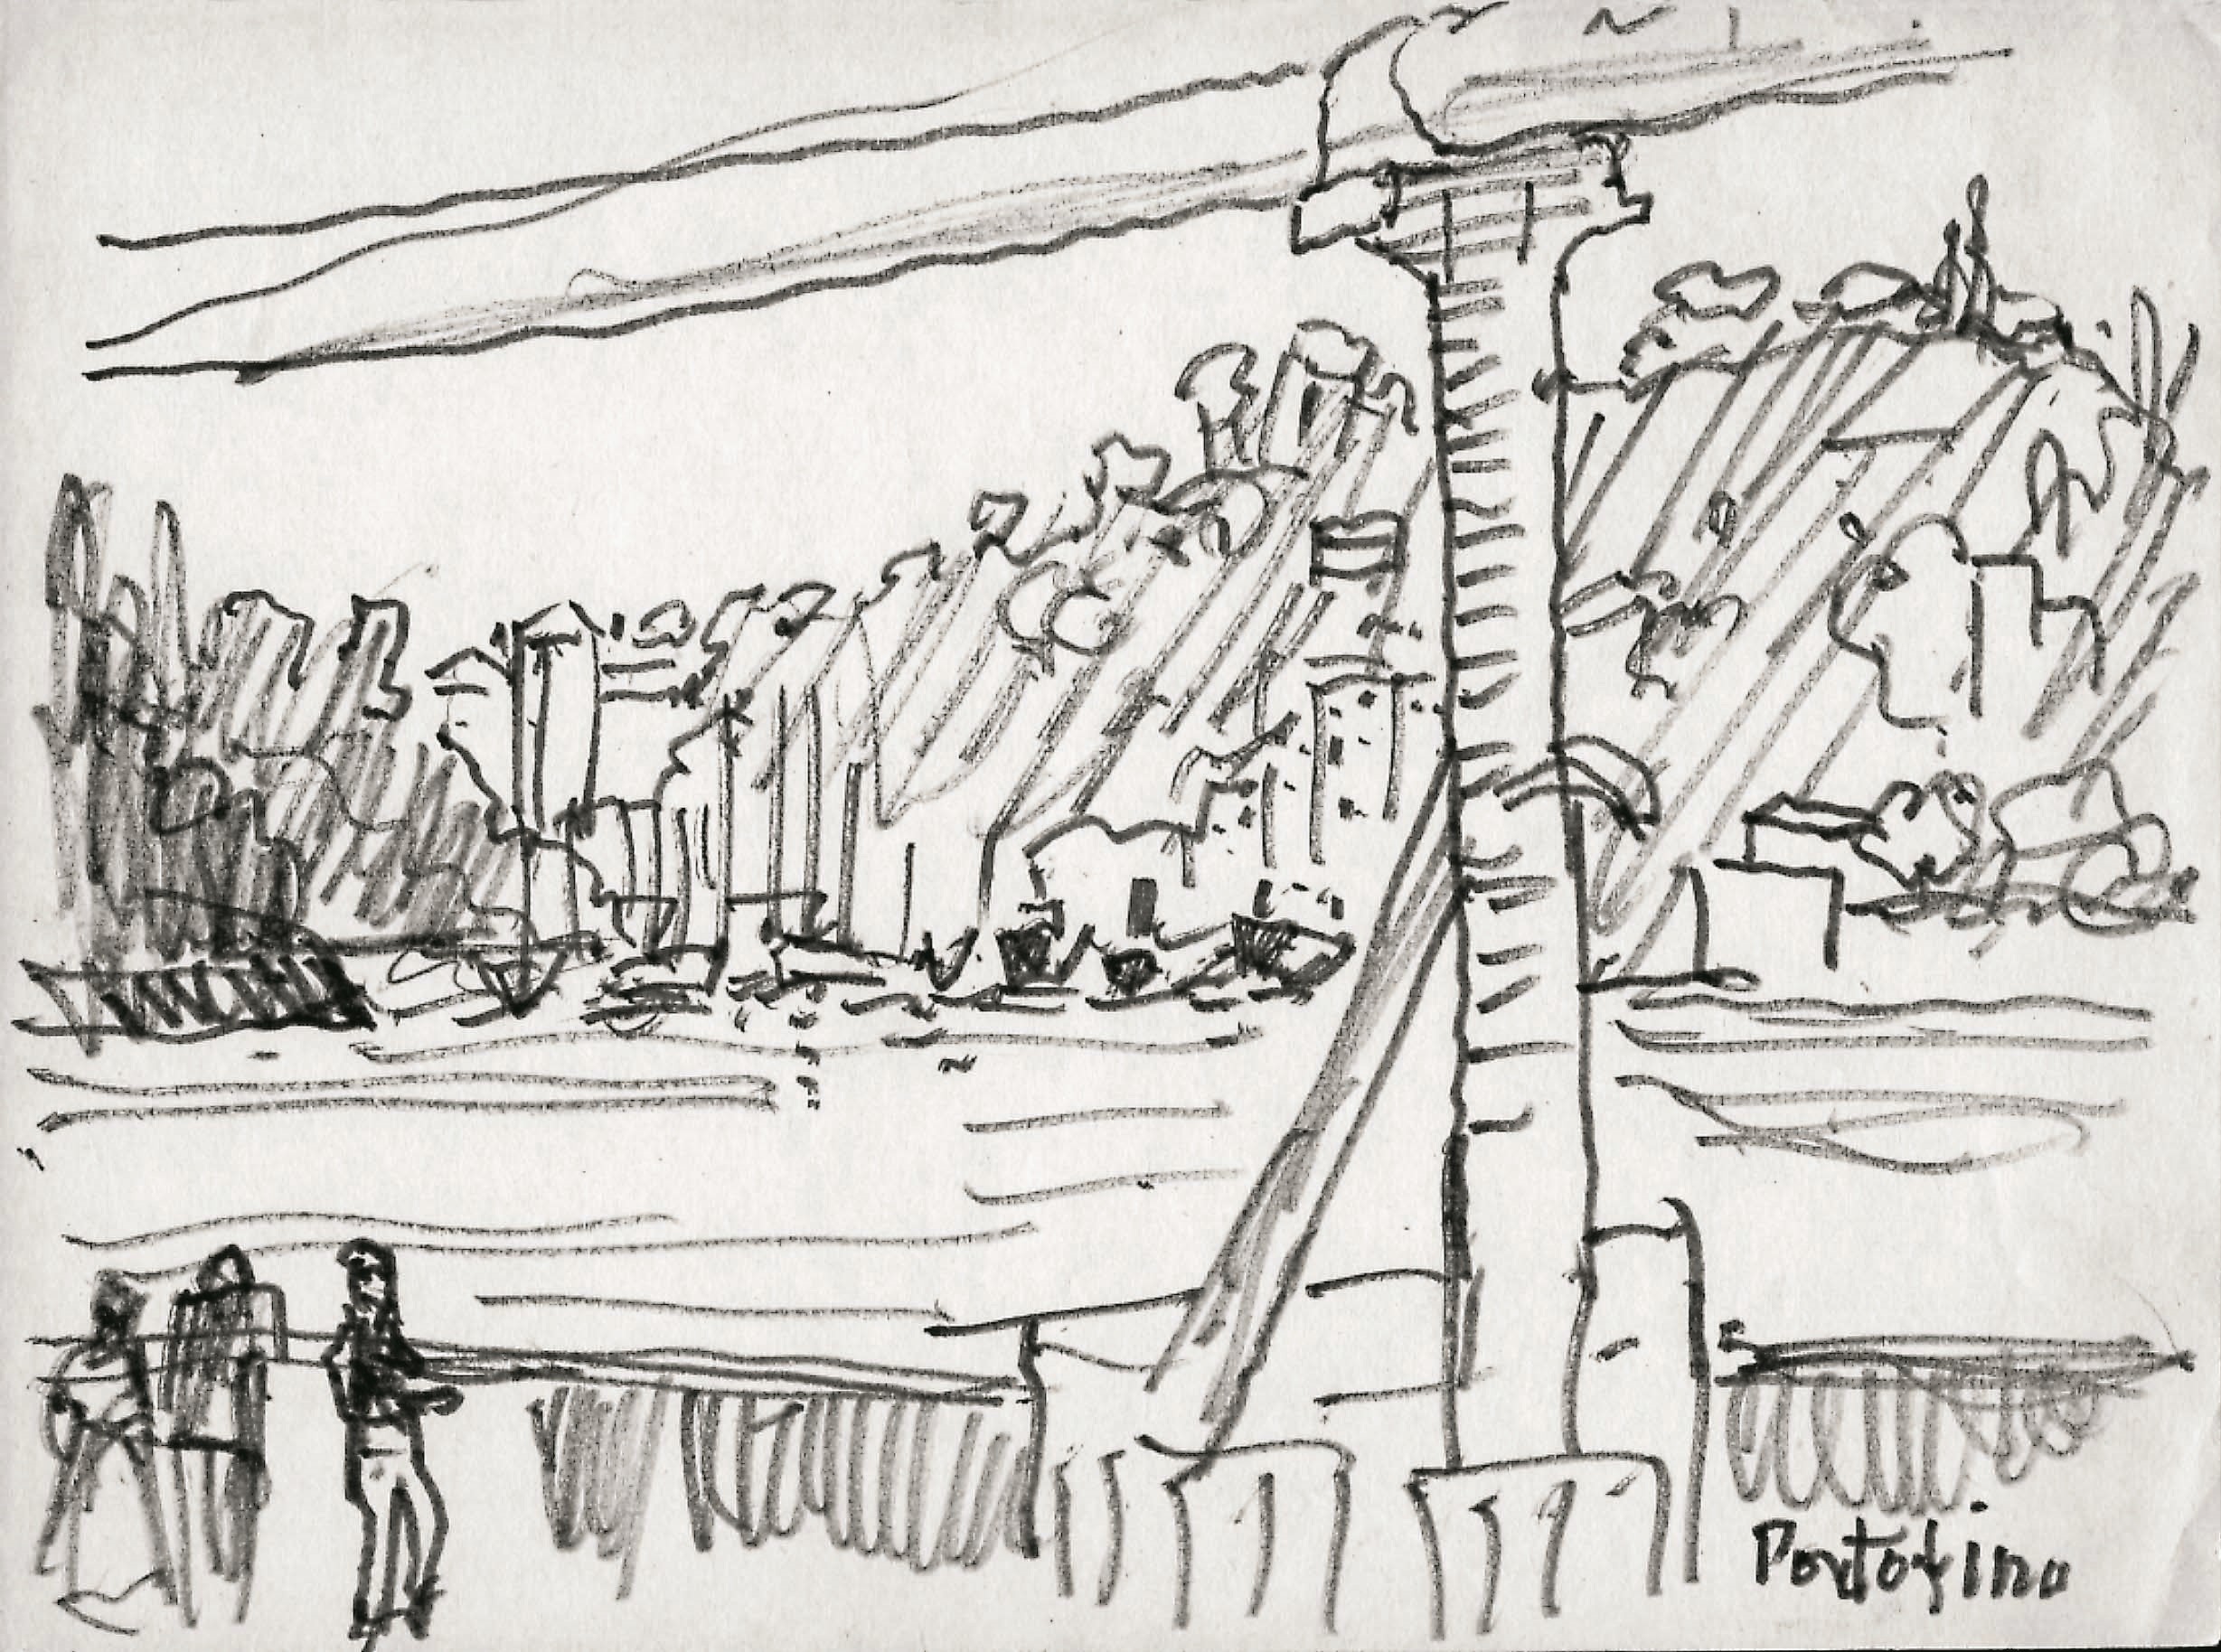 Dibujo de José Manaut titulado Portofino, Génova, 1966. Lápiz sobre papel.